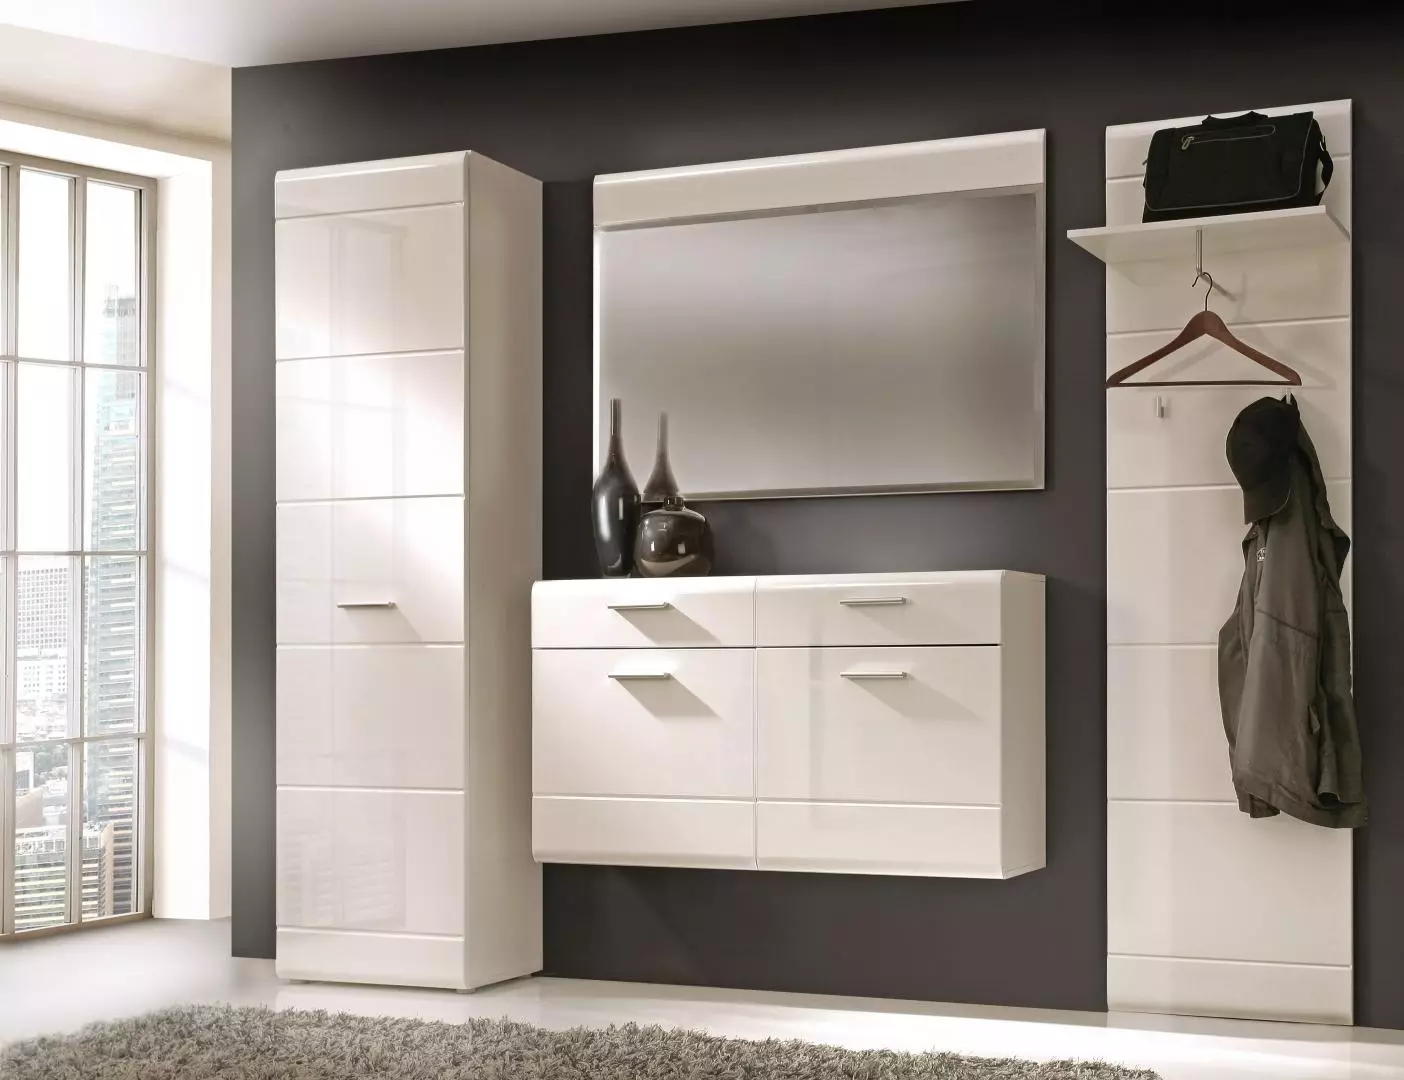 Salas brillantes: salones modulares blancos en un pasillo con fachadas brillantes, muebles negros y otros modelos. 9134_6